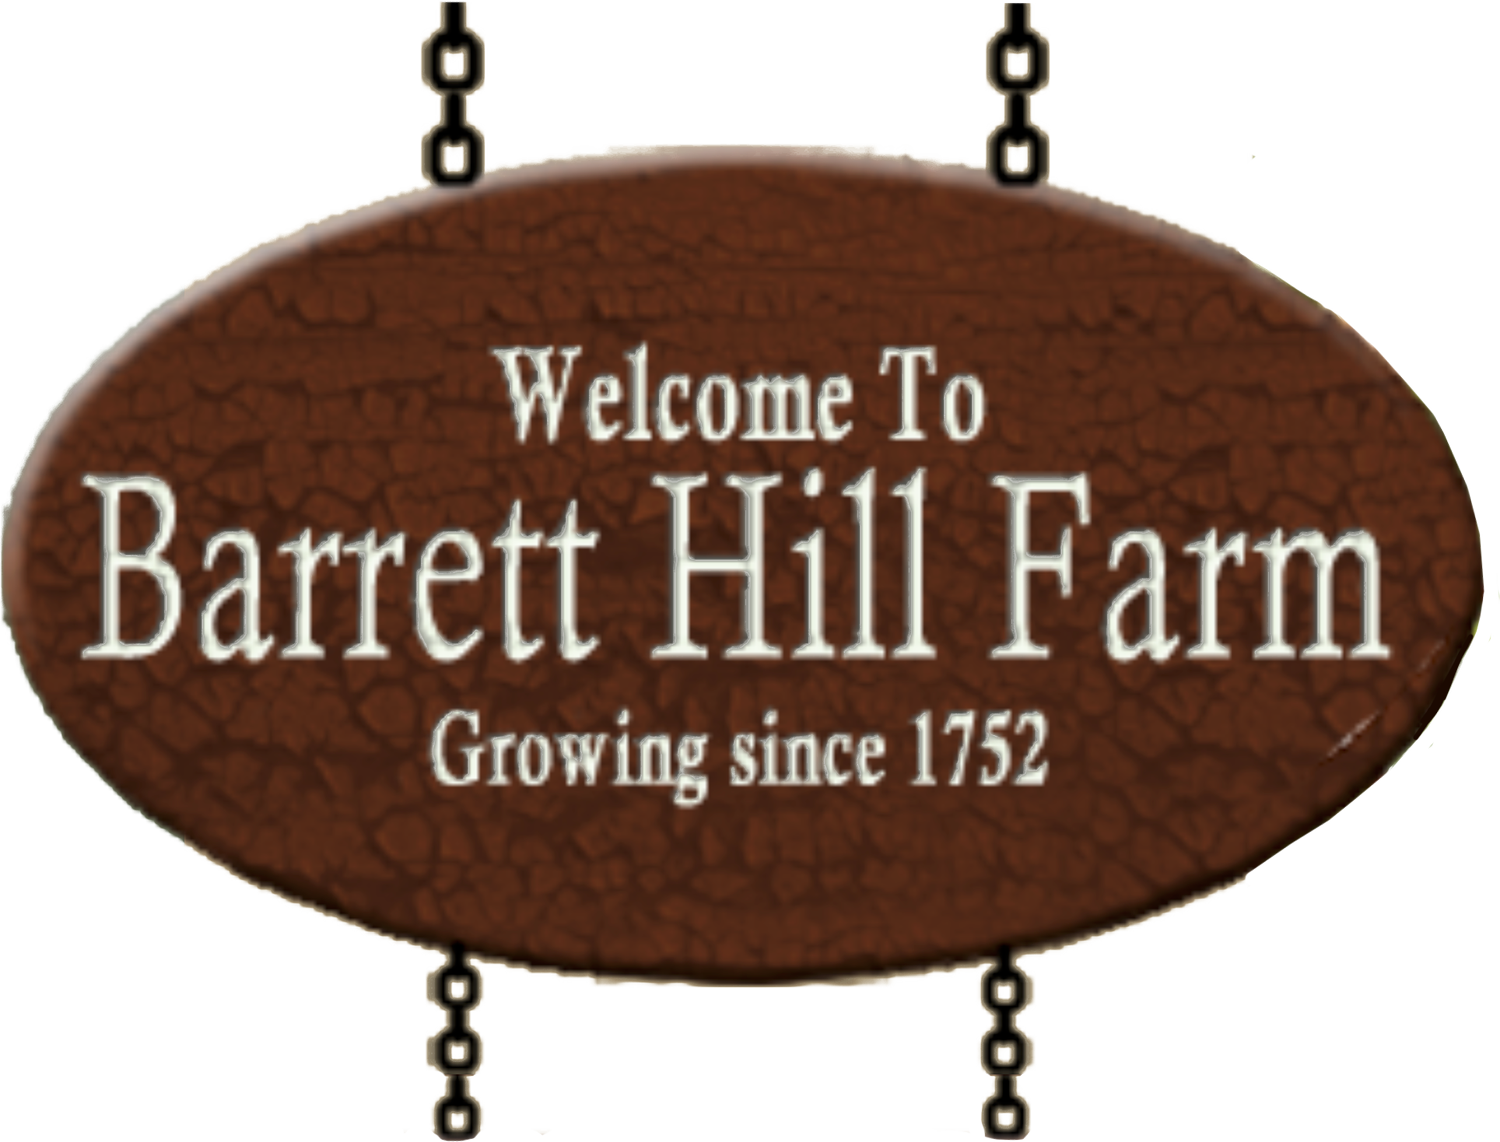 Barrett Hill Farm